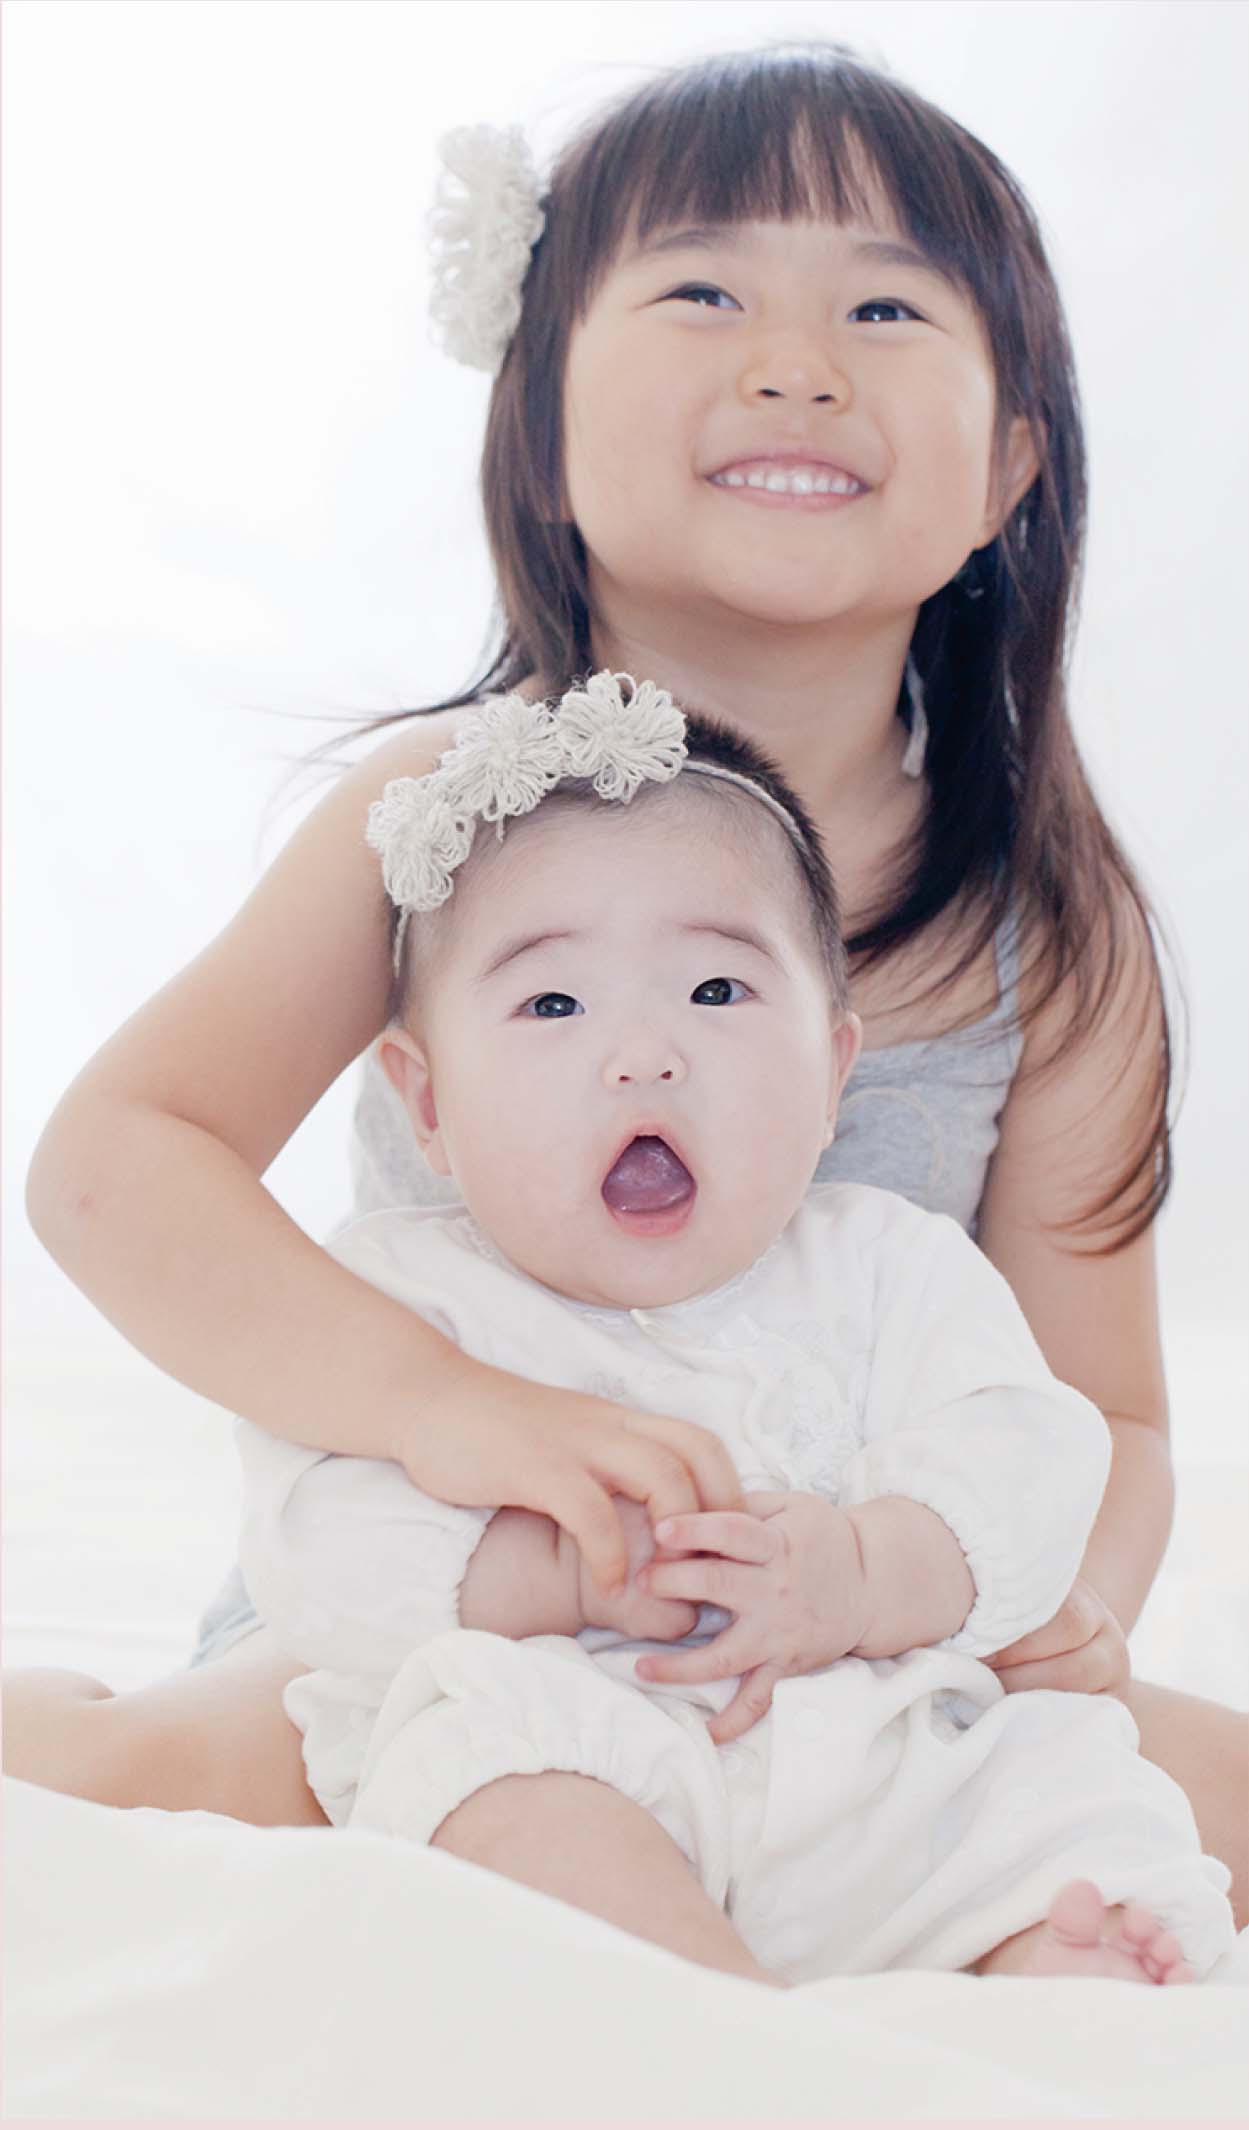 赤ちゃんを抱く女の子の肖像写真